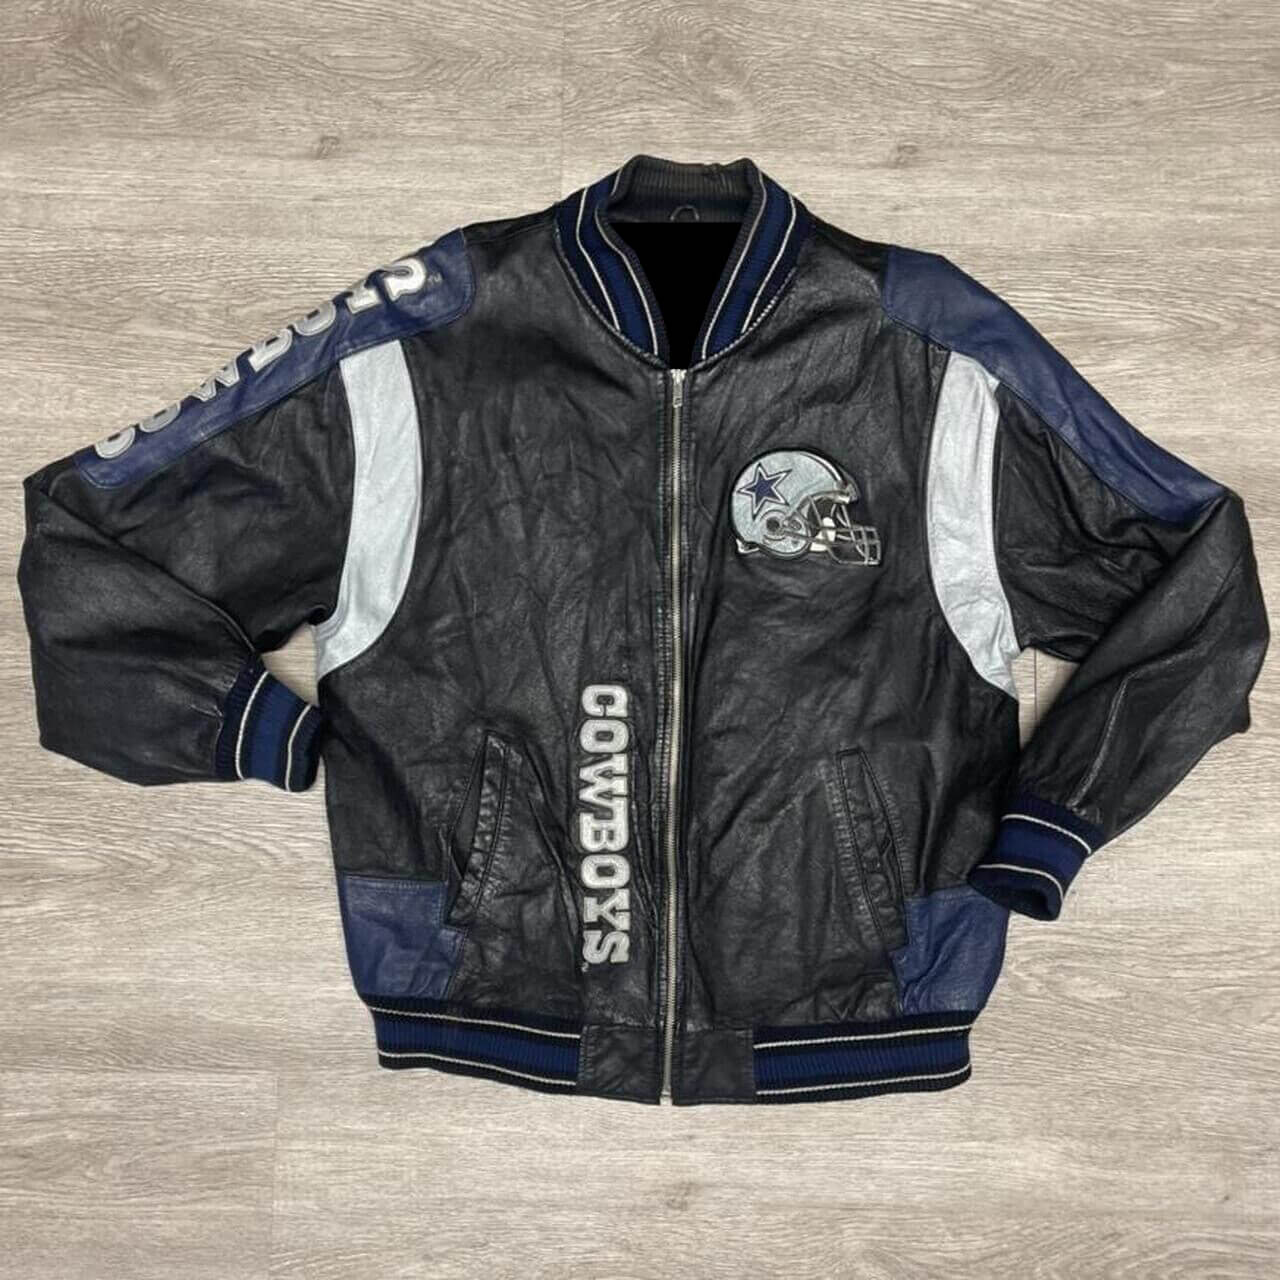 Vintage Carl Banks Dallas Cowboys Leather Jacket - Maker of Jacket